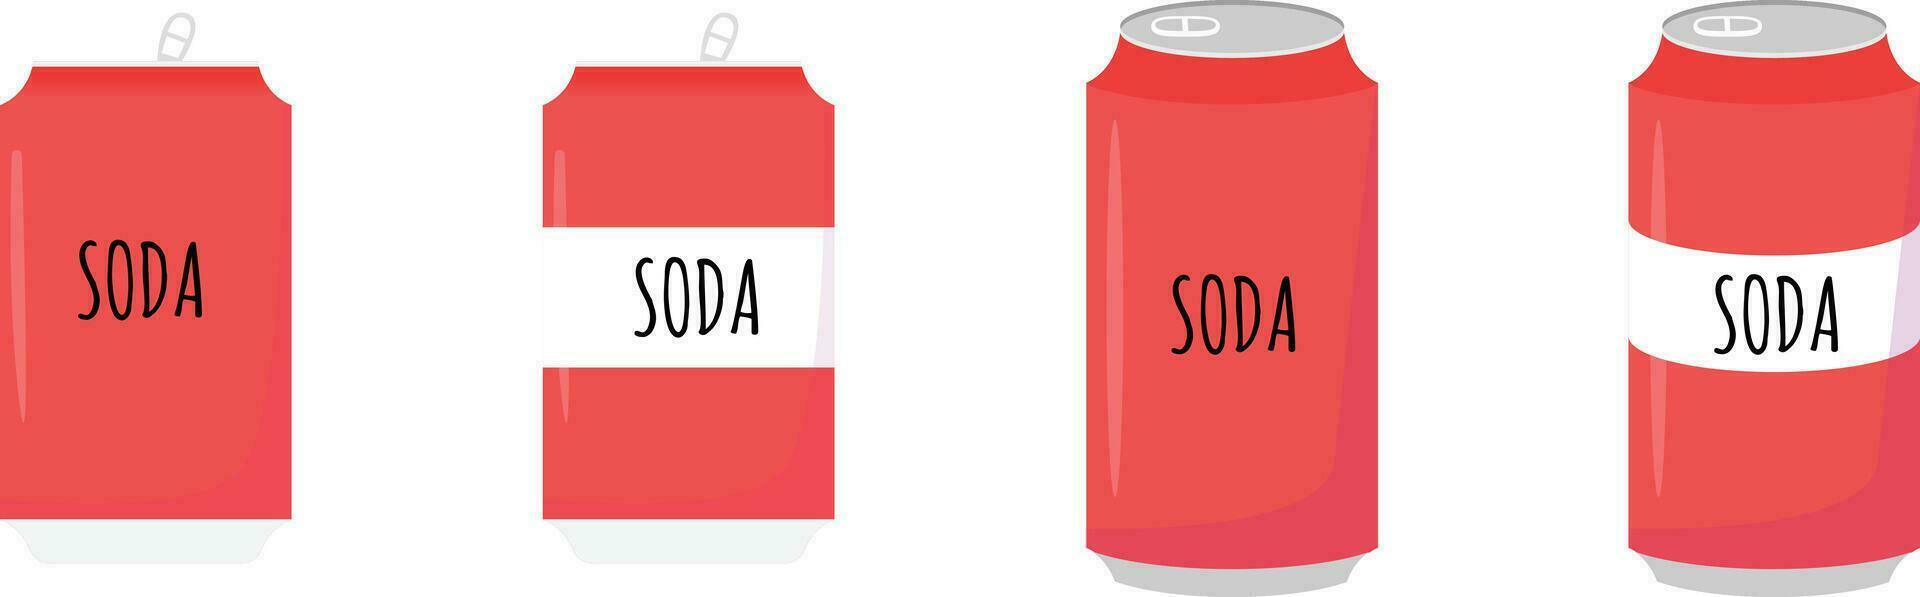 soda reajuste salarial lata rojo color Fresco bebida suave bebida vector